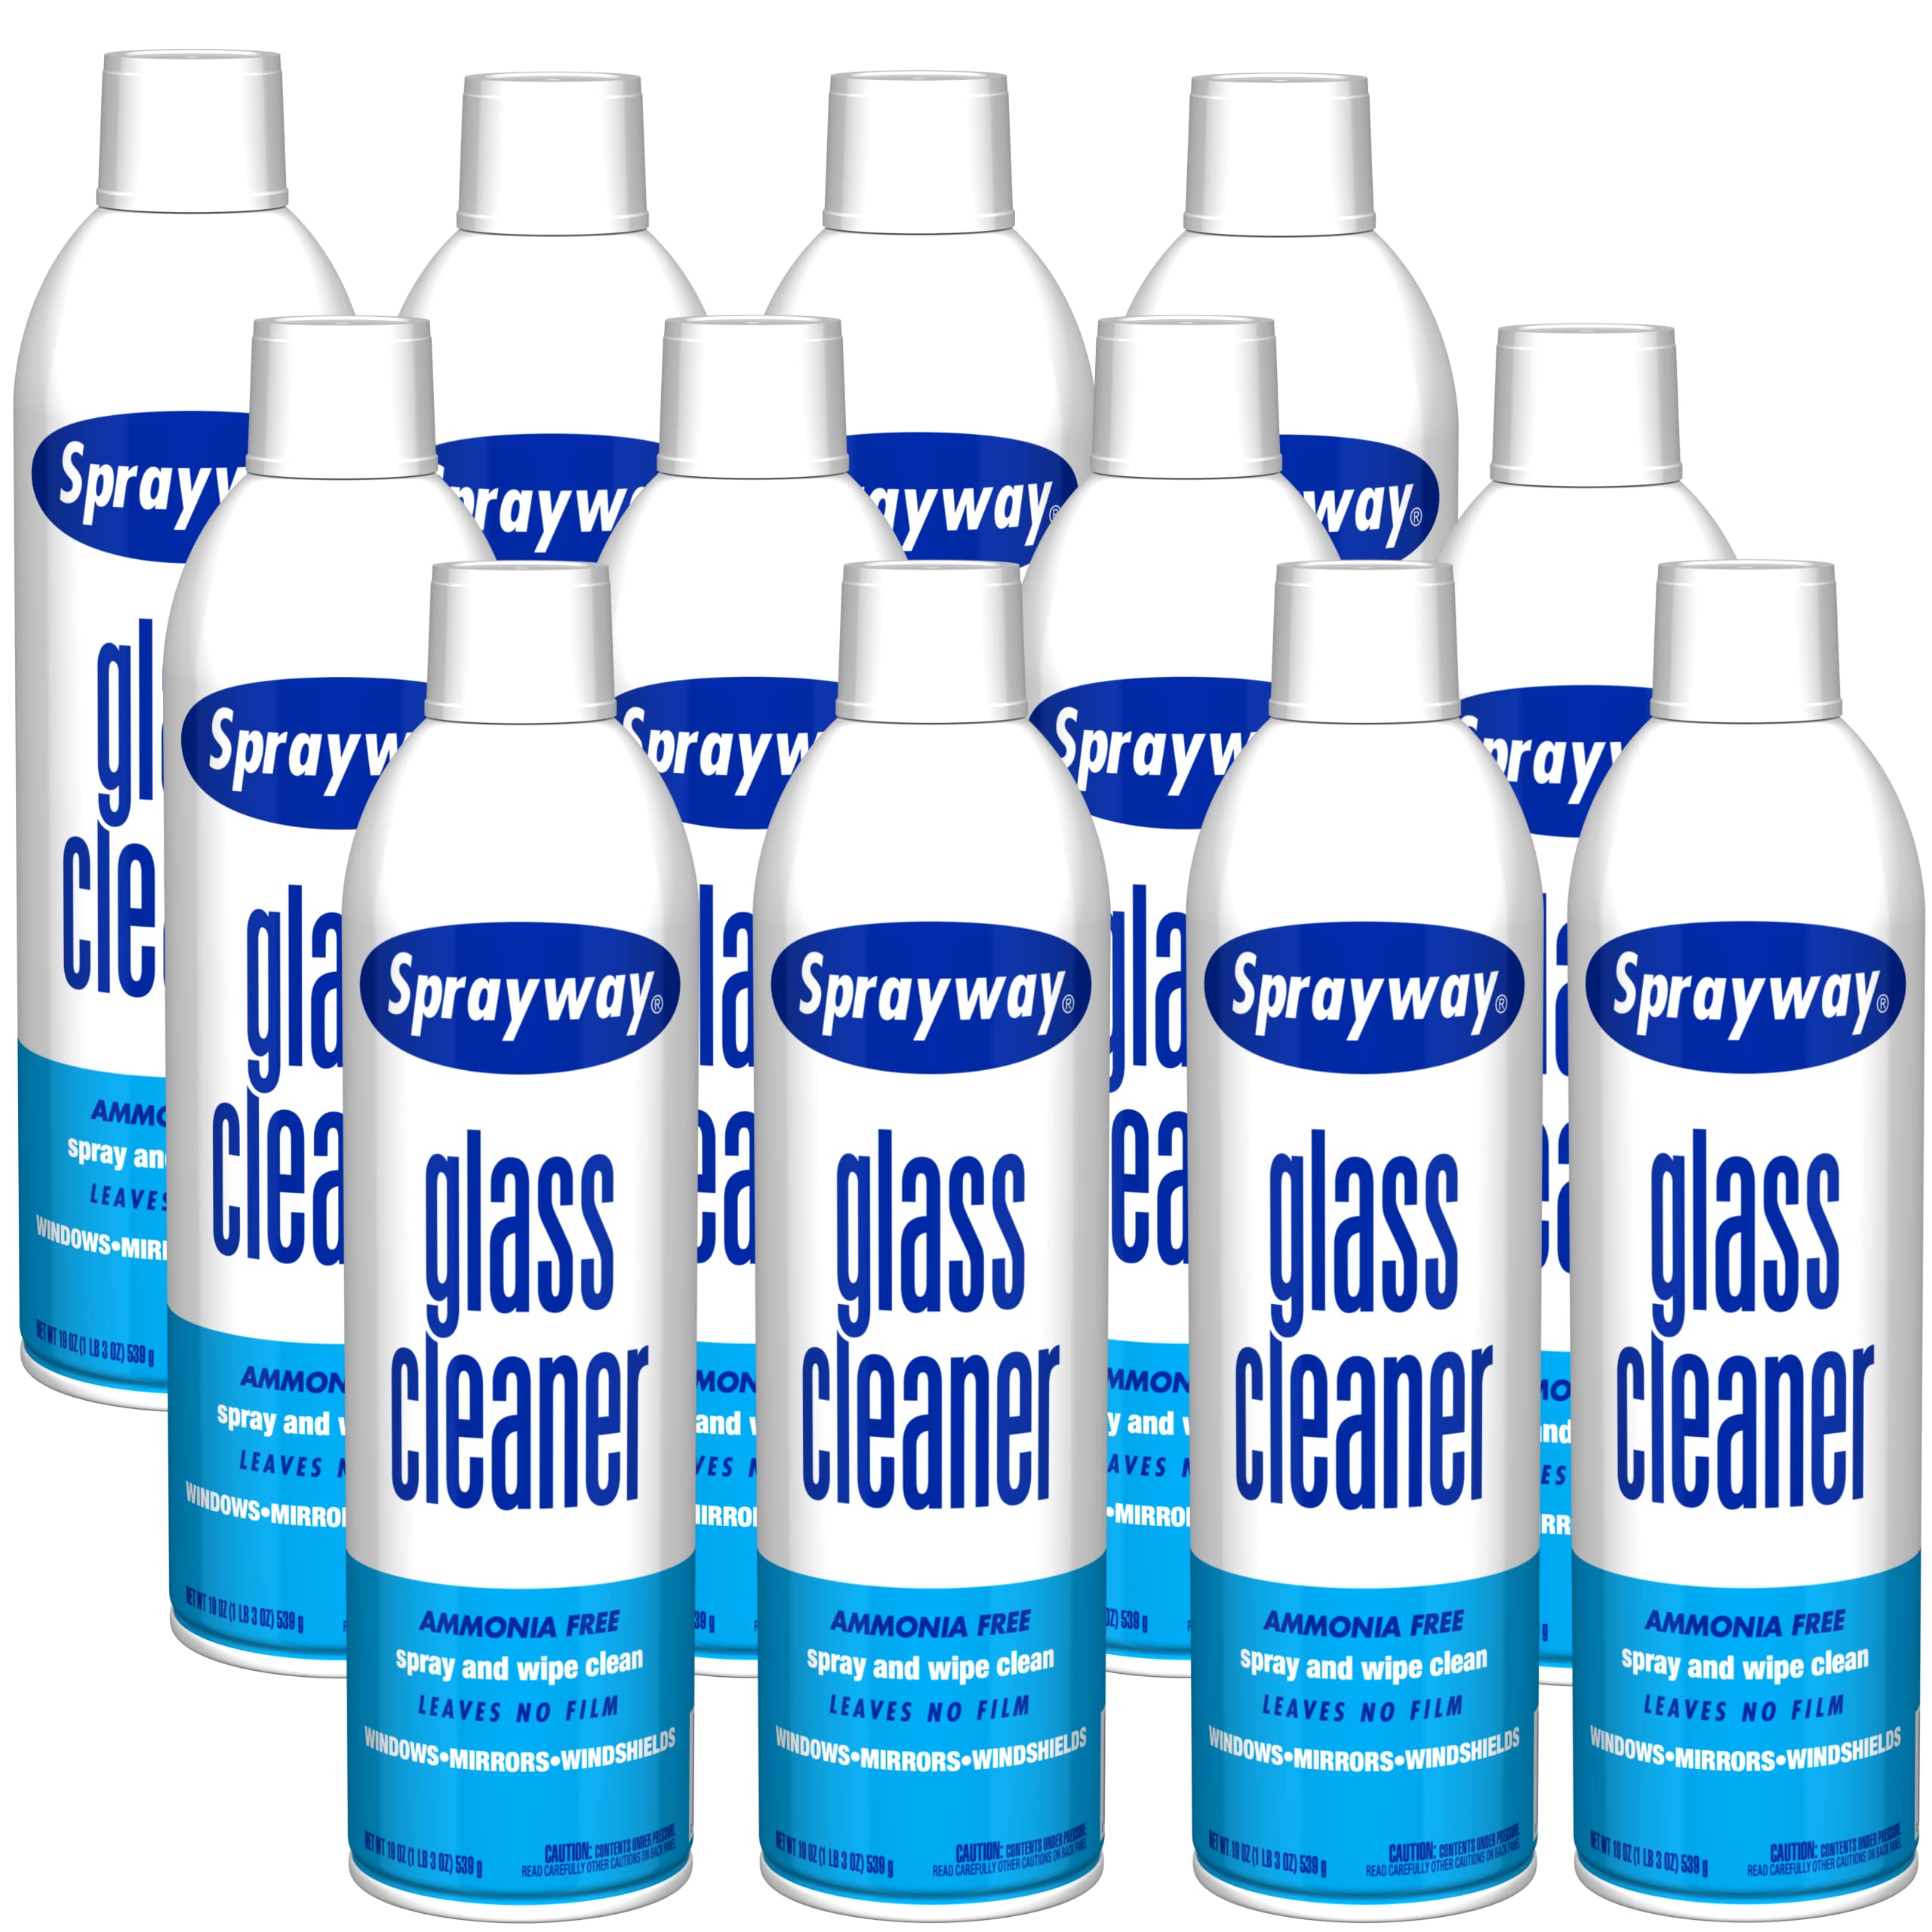 Sprayway Glass Cleaner - 19 oz Aerosol Spray Can